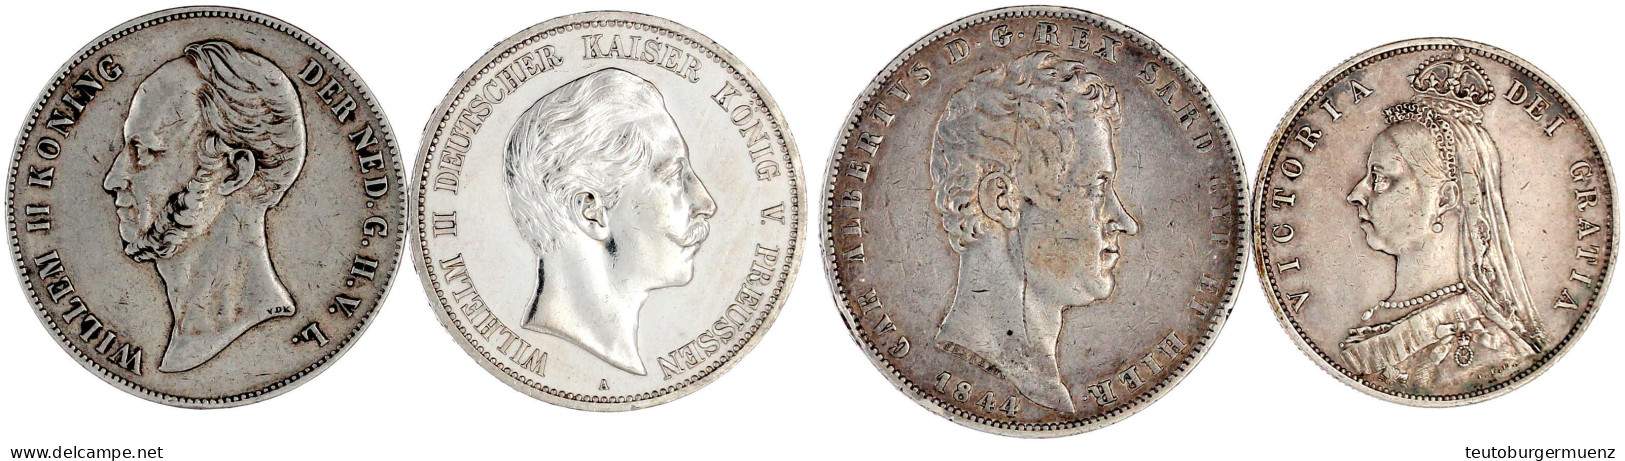 4 Silbermünzen: Preussen 5 Mark 1908 (vz, Berieben), Niederlande 2 1/2 Gulden 1847, Italien Sardinien 5 Lire 1844, Großb - Sonstige – Europa